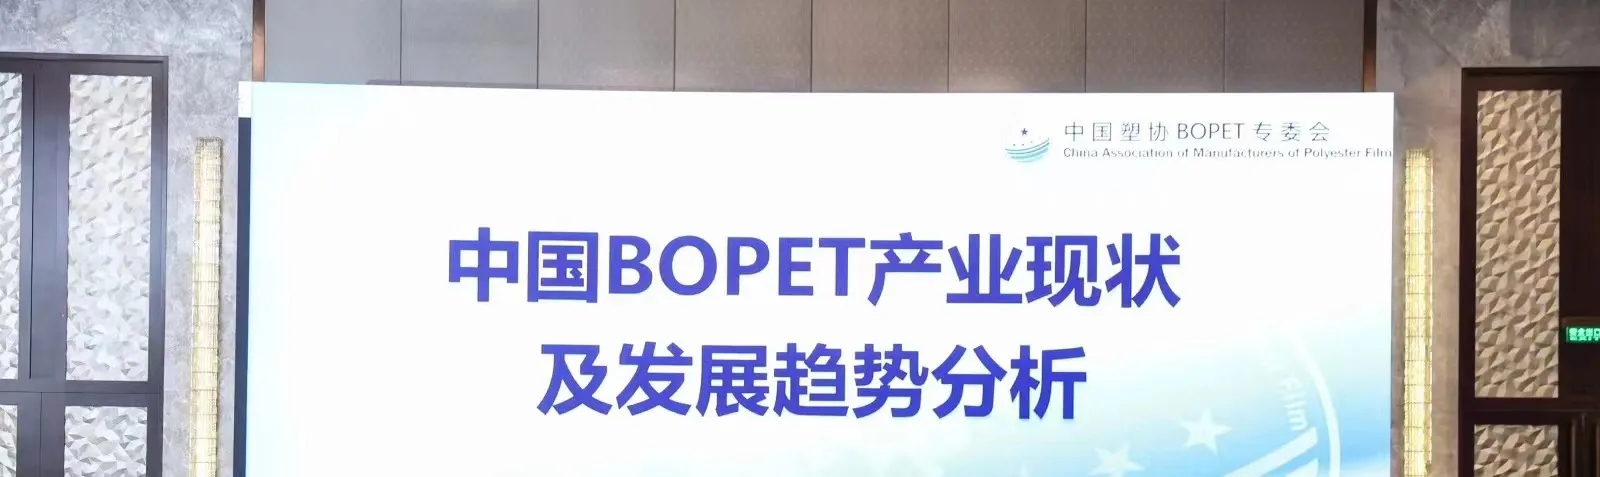 การประชุมเกี่ยวกับสถานการณ์ปัจจุบันและแนวโน้มการพัฒนาของอุตสาหกรรม BOPET ของจีน